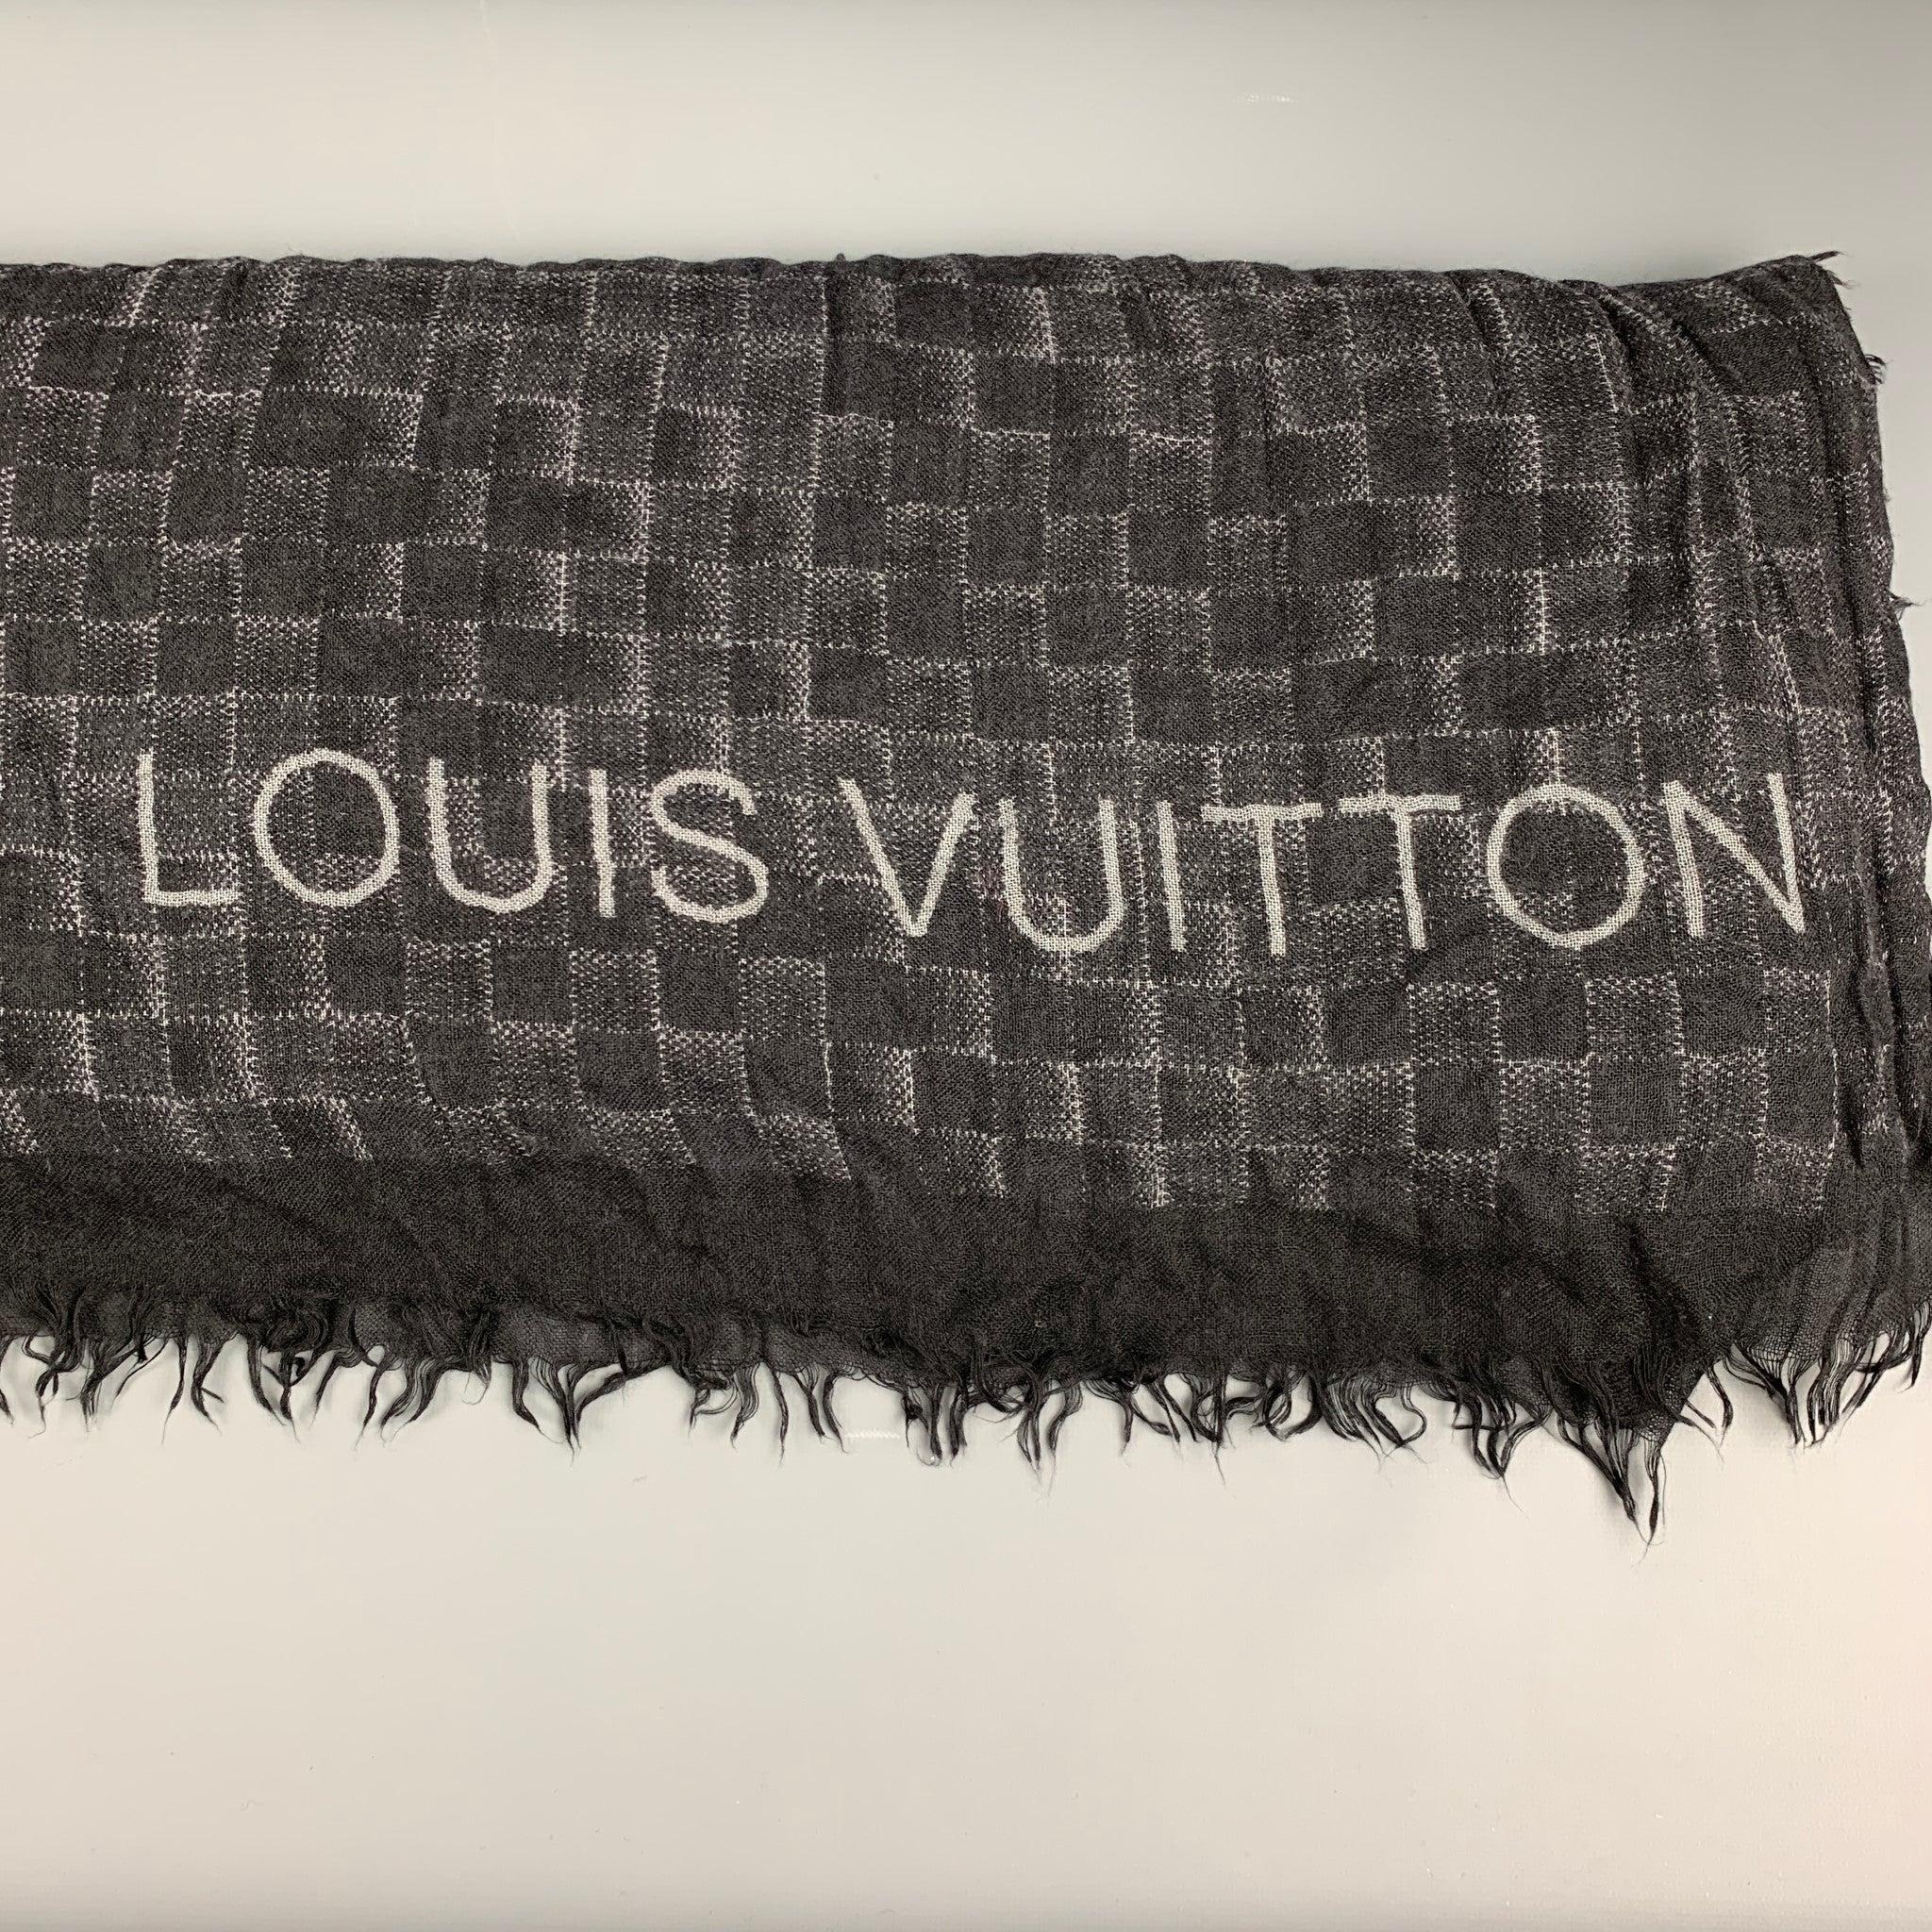 LOUIS VUITTON Schal mit schwarz-grauem Damierprint und Fransenbesatz. Hergestellt in Italien. Sehr guter gebrauchter Zustand. 

Abmessungen: 
  74 Zoll  x 52 Zoll  
  
  
Referenz: 126856
Kategorie: Schals & Tücher
Mehr Details
    
Marke:  LOUIS